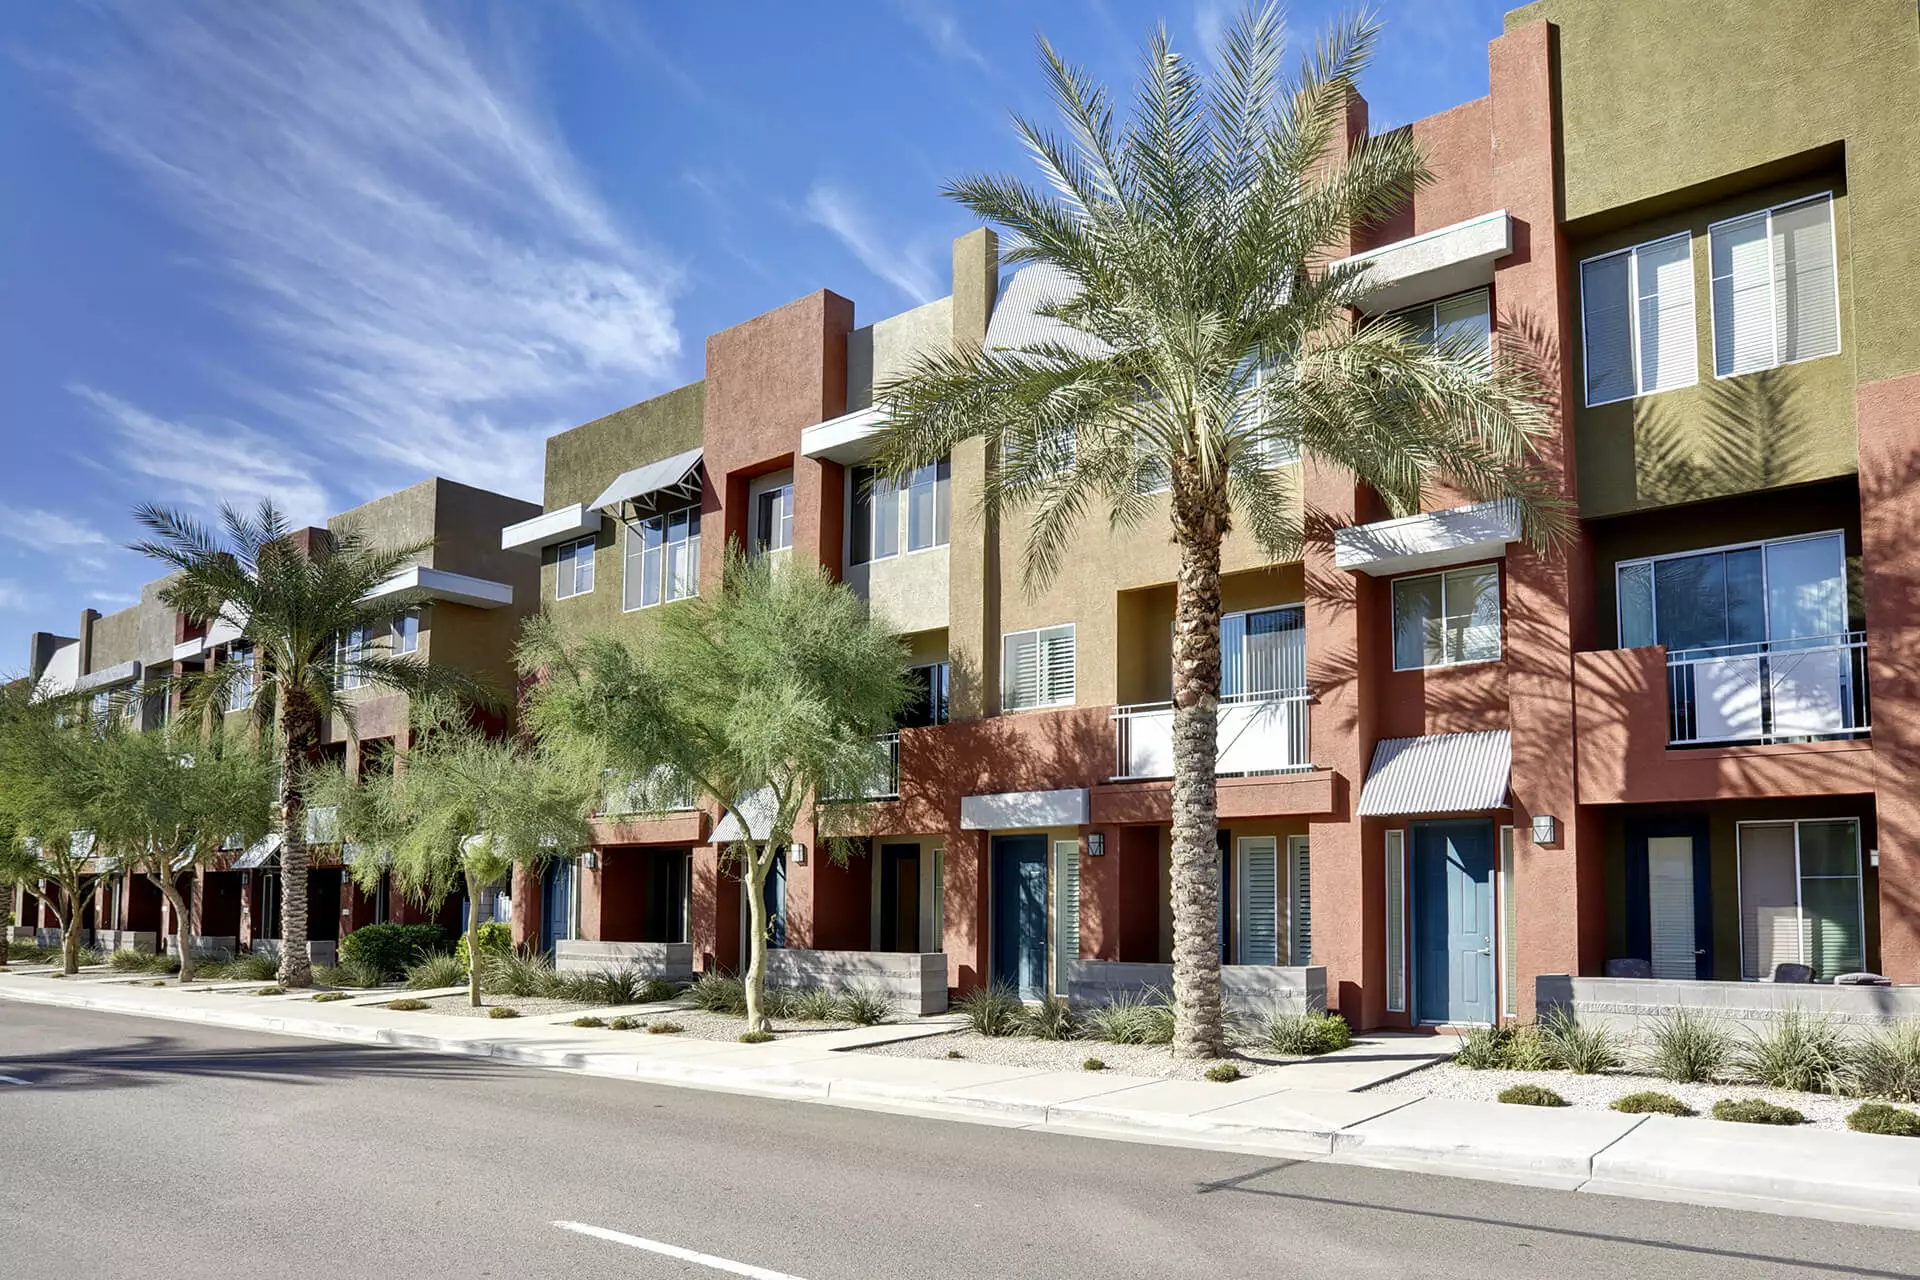 Condominiums in Arizona